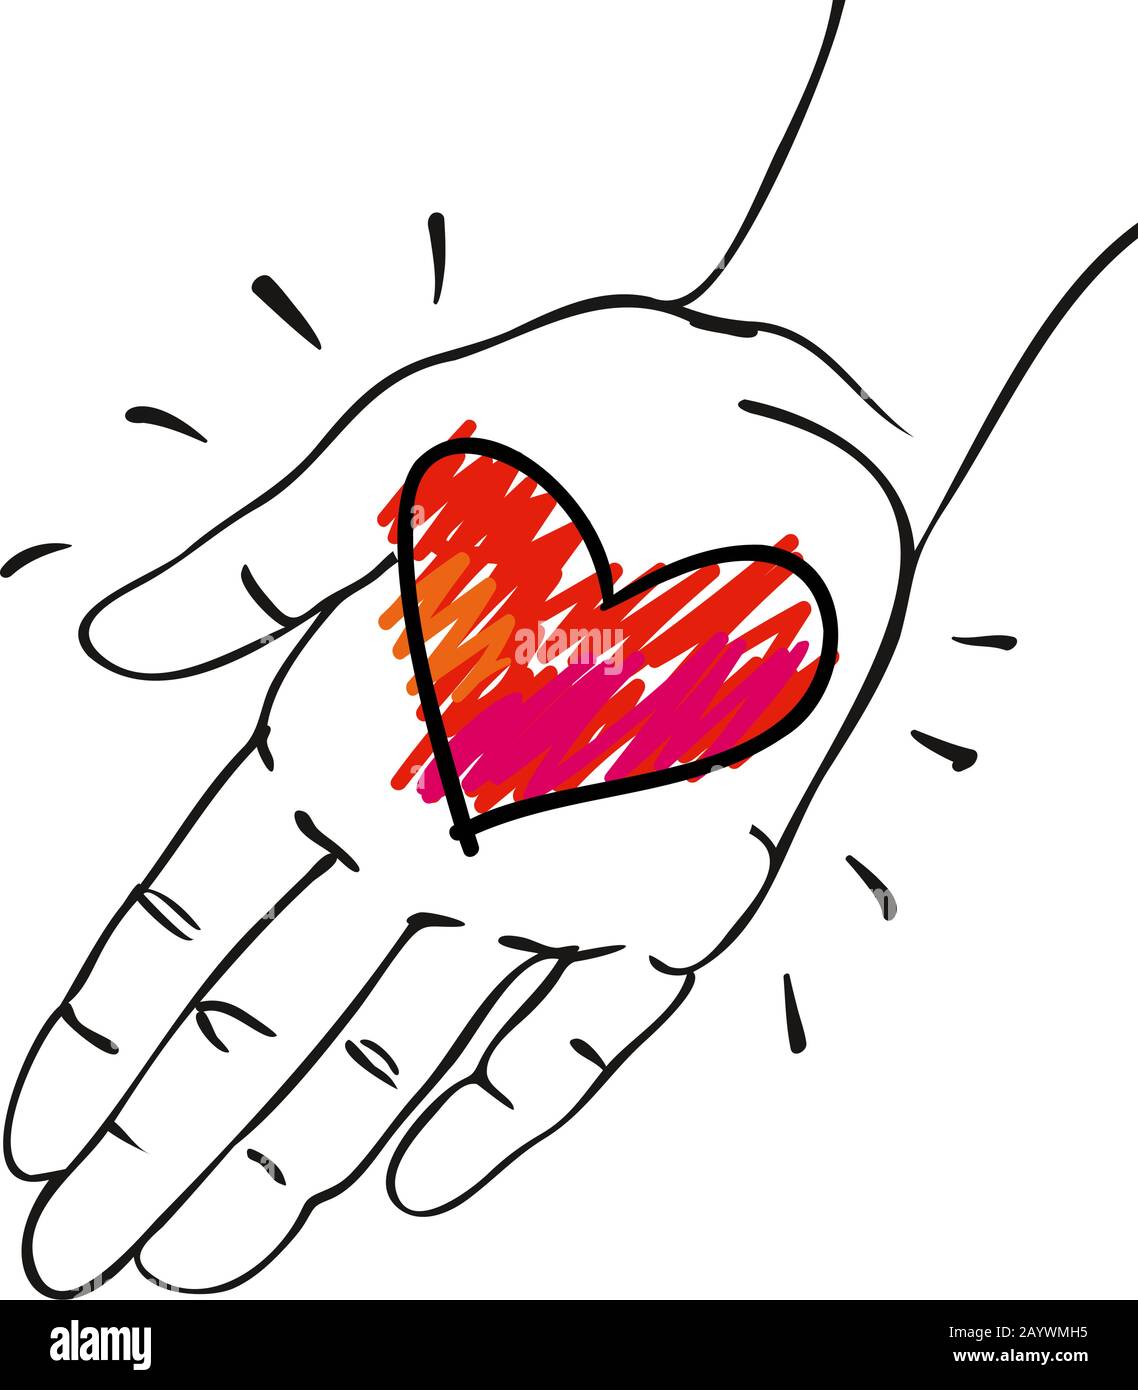 Geben Sie ihm das Herz - Hand mit rot-rosafarbenem Herz - handgezeichnete Vektorgrafiken für Banner, Karten Stock Vektor